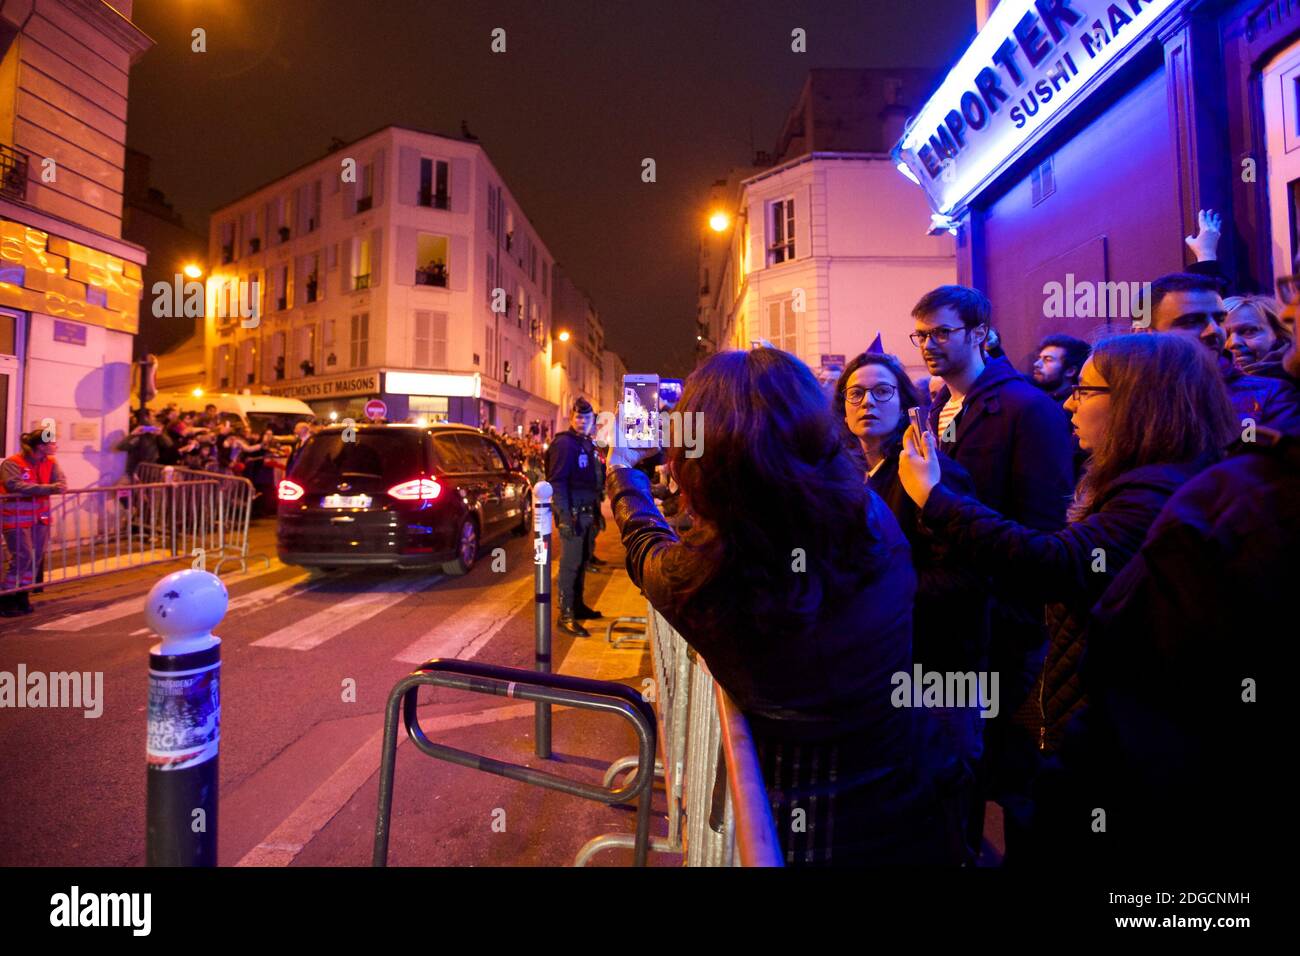 Les habitants de la rue de l'Abbe Groult et ses partisans attendent l'arrivée d'Emmanuel Macron, un espoir présidentiel, au siège de sa campagne à Paris, en France, le 7 mai 2017. Photo de Morel-fort/de russe/ABACAPRESS.COM Banque D'Images